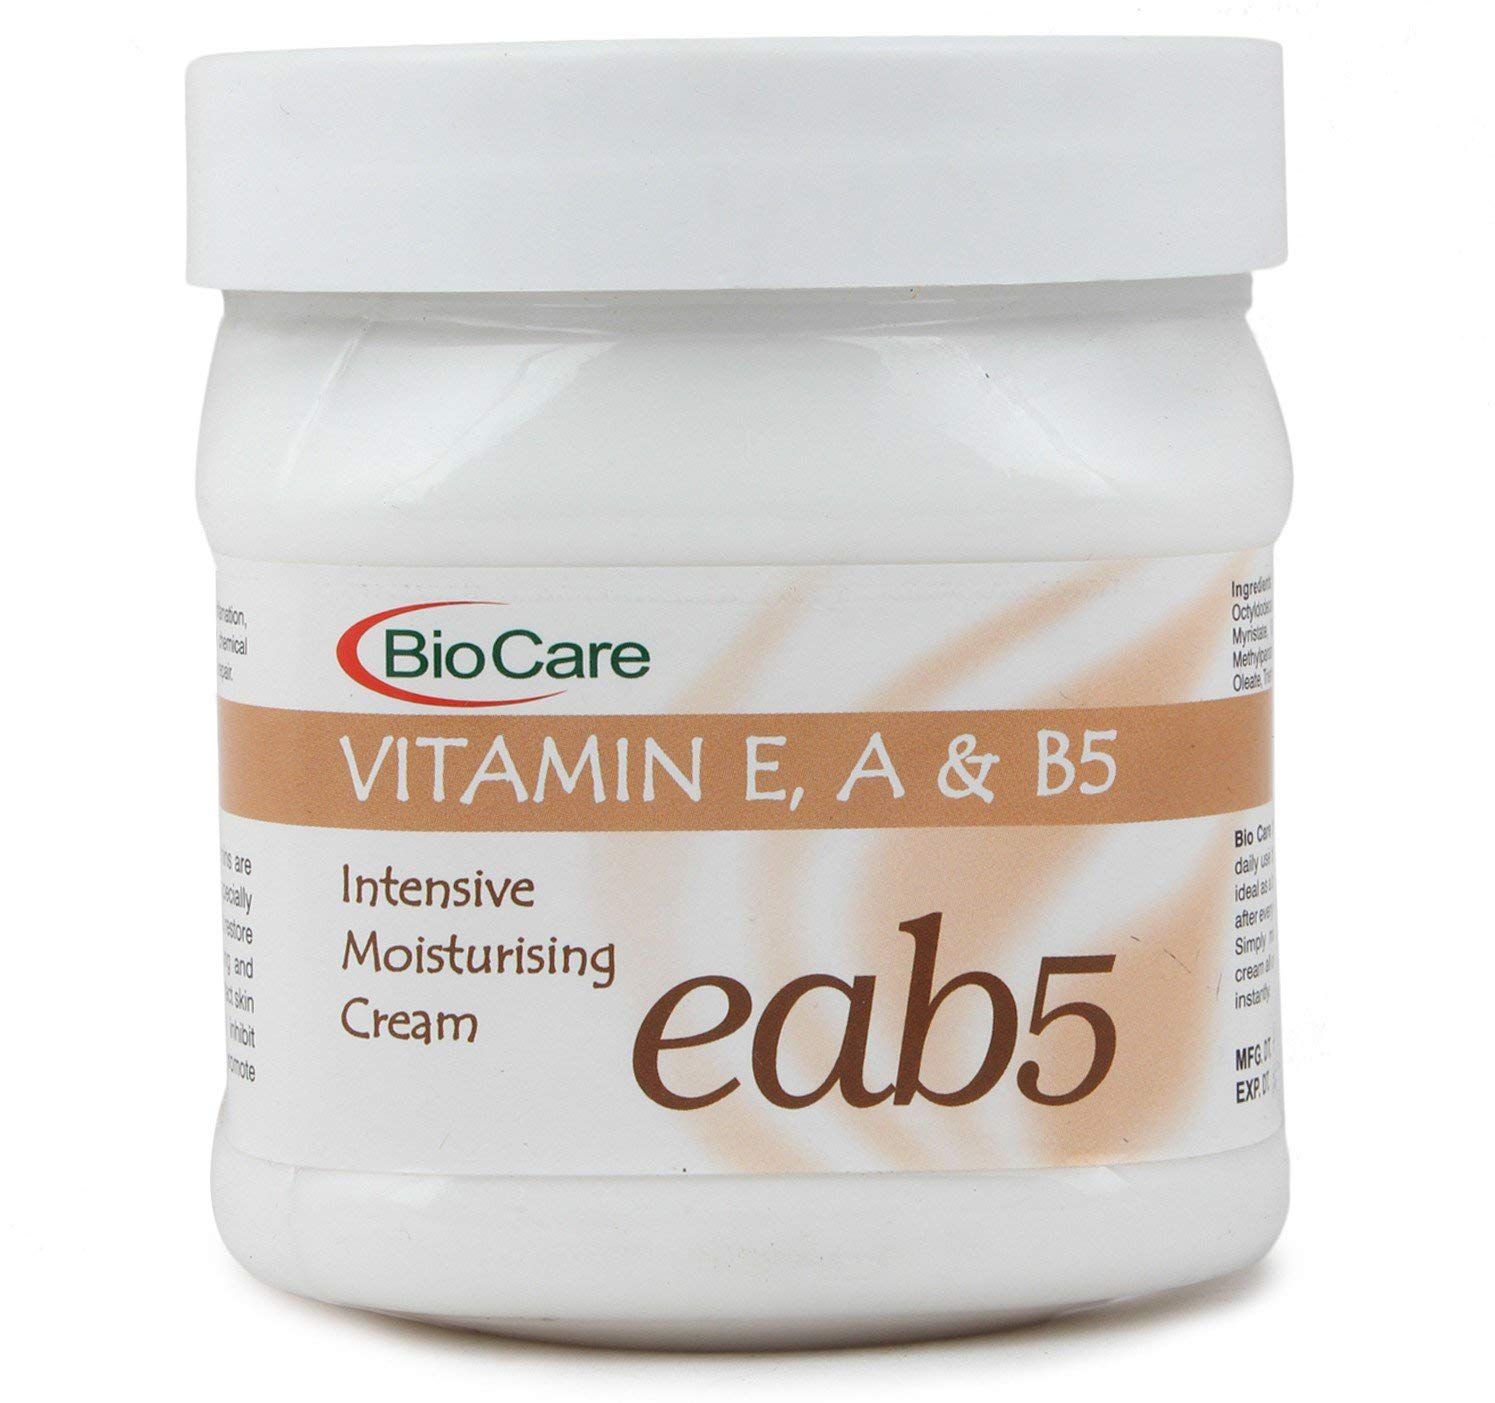     			BioCare Face & Body Cream Vitamins E, A & B5 500 ml